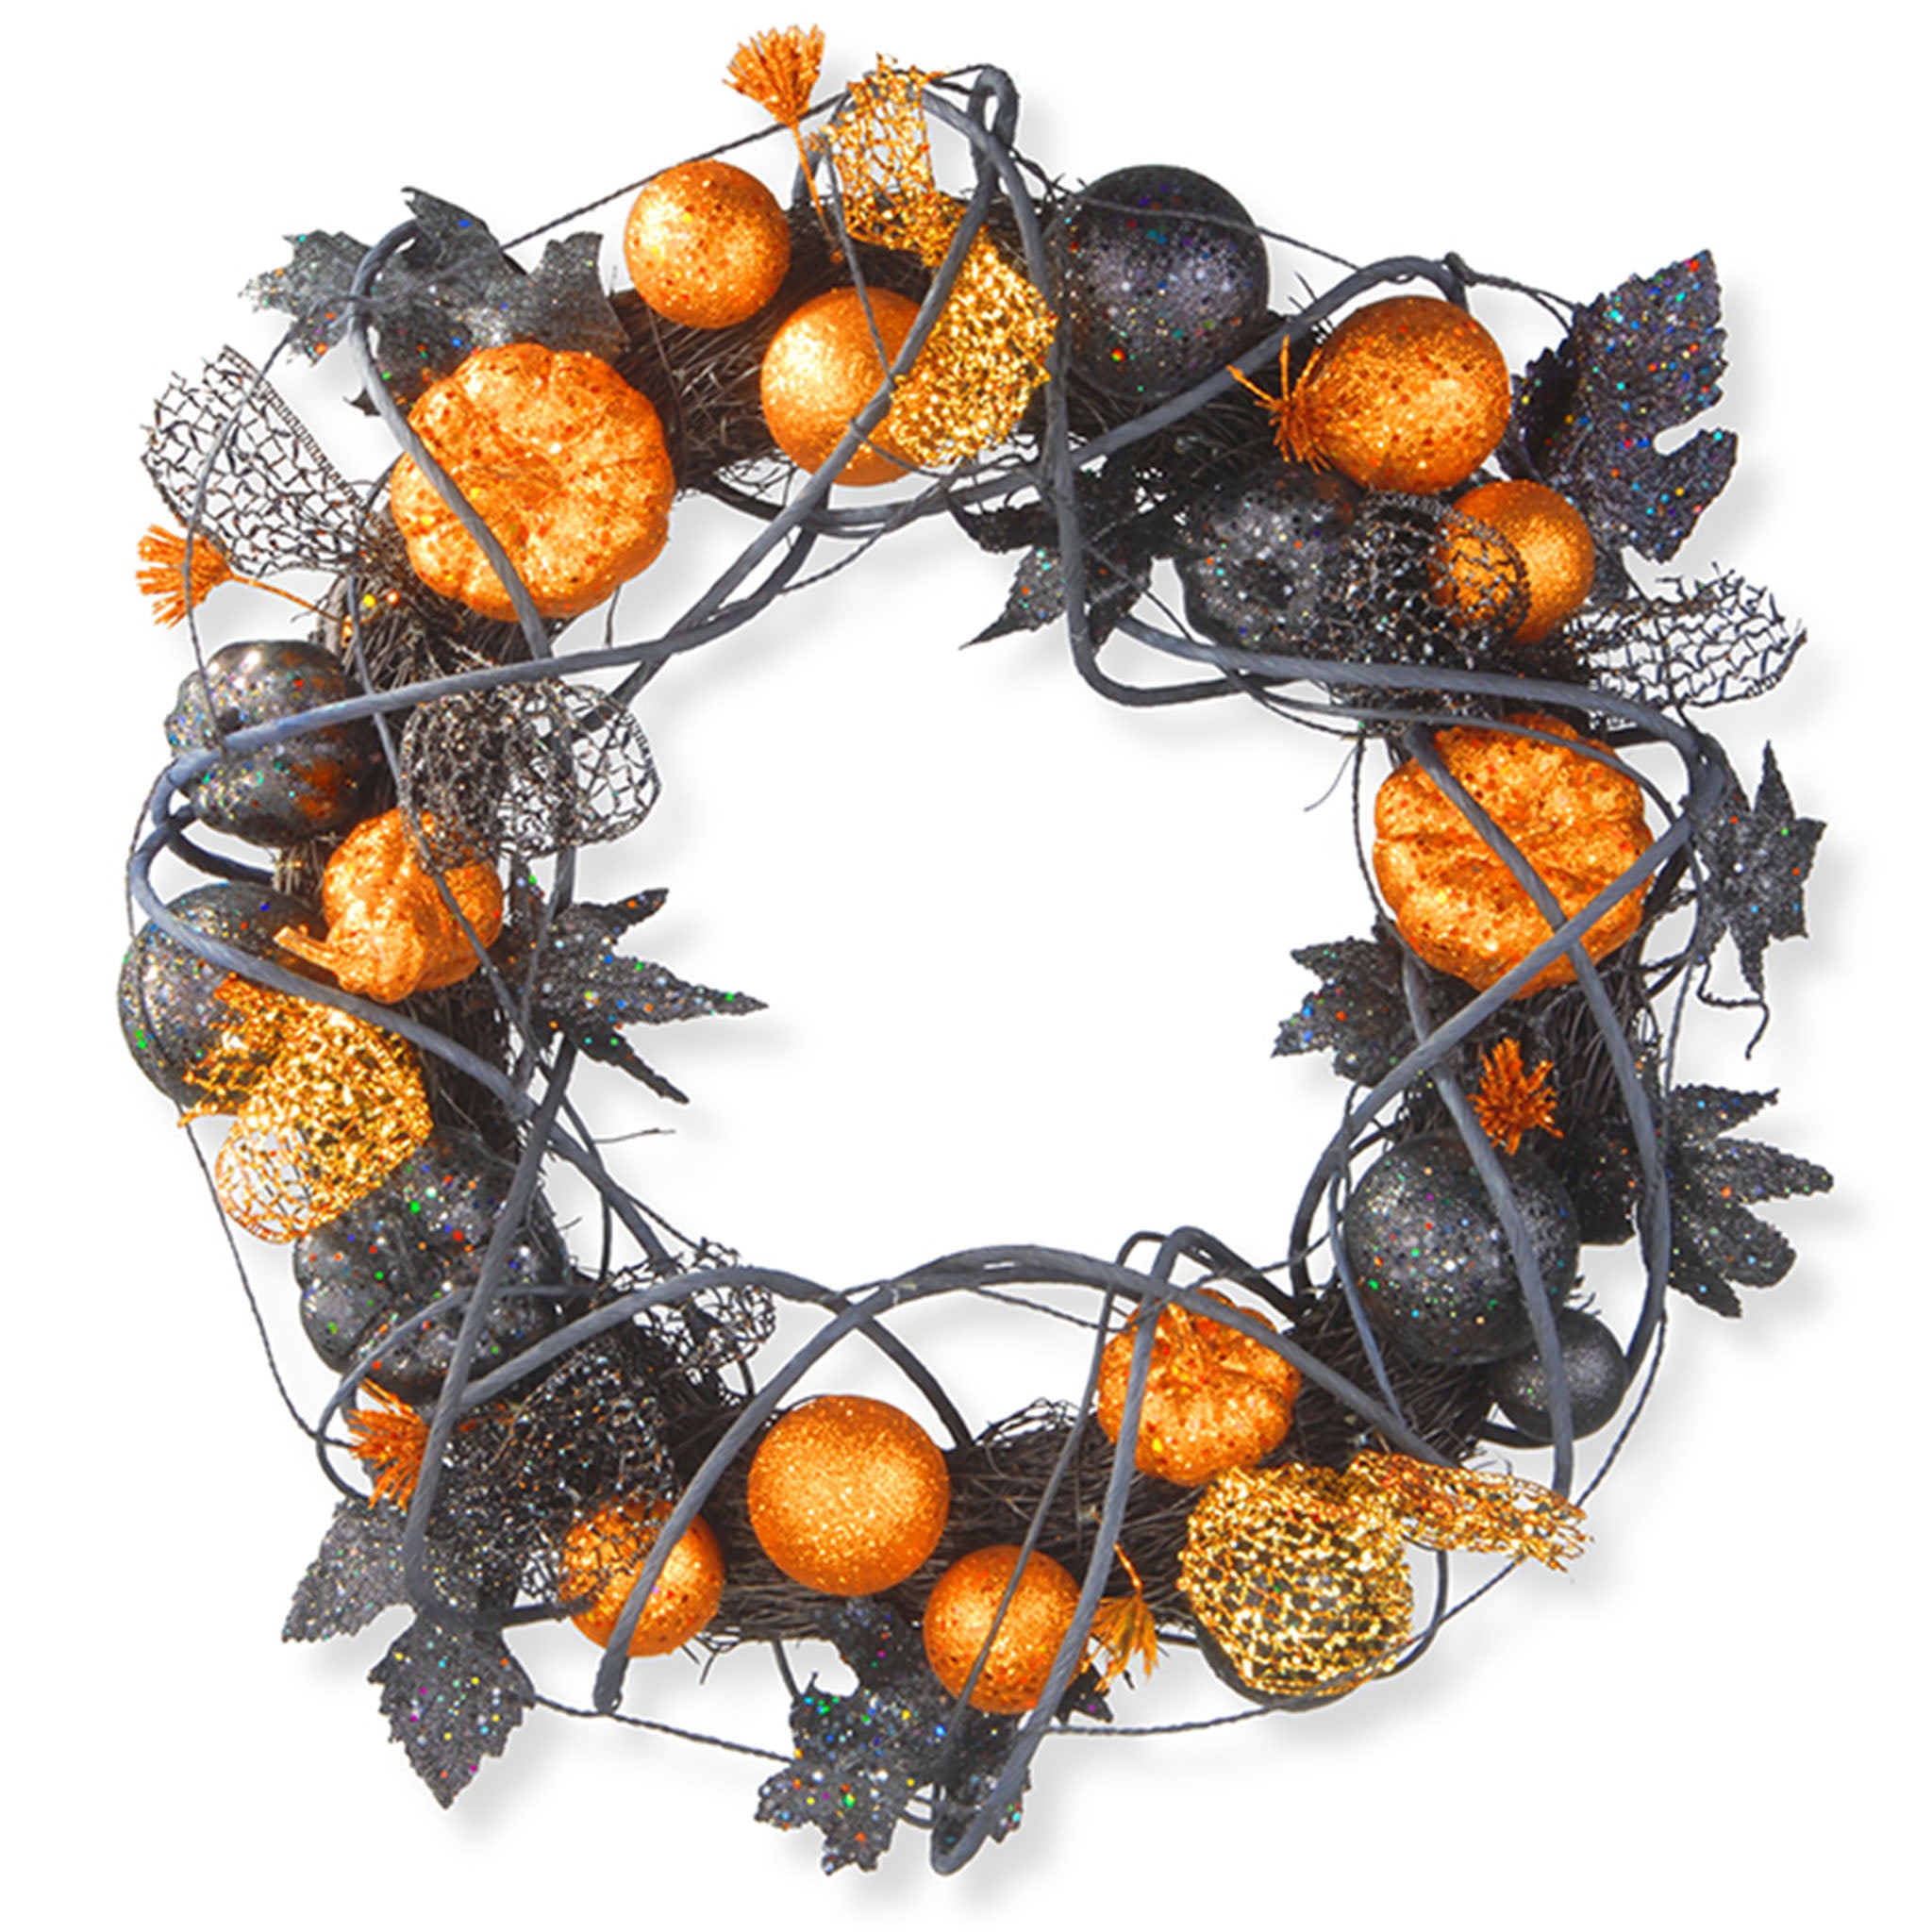 Halloween 20” Pumpkins & Ornaments Decor